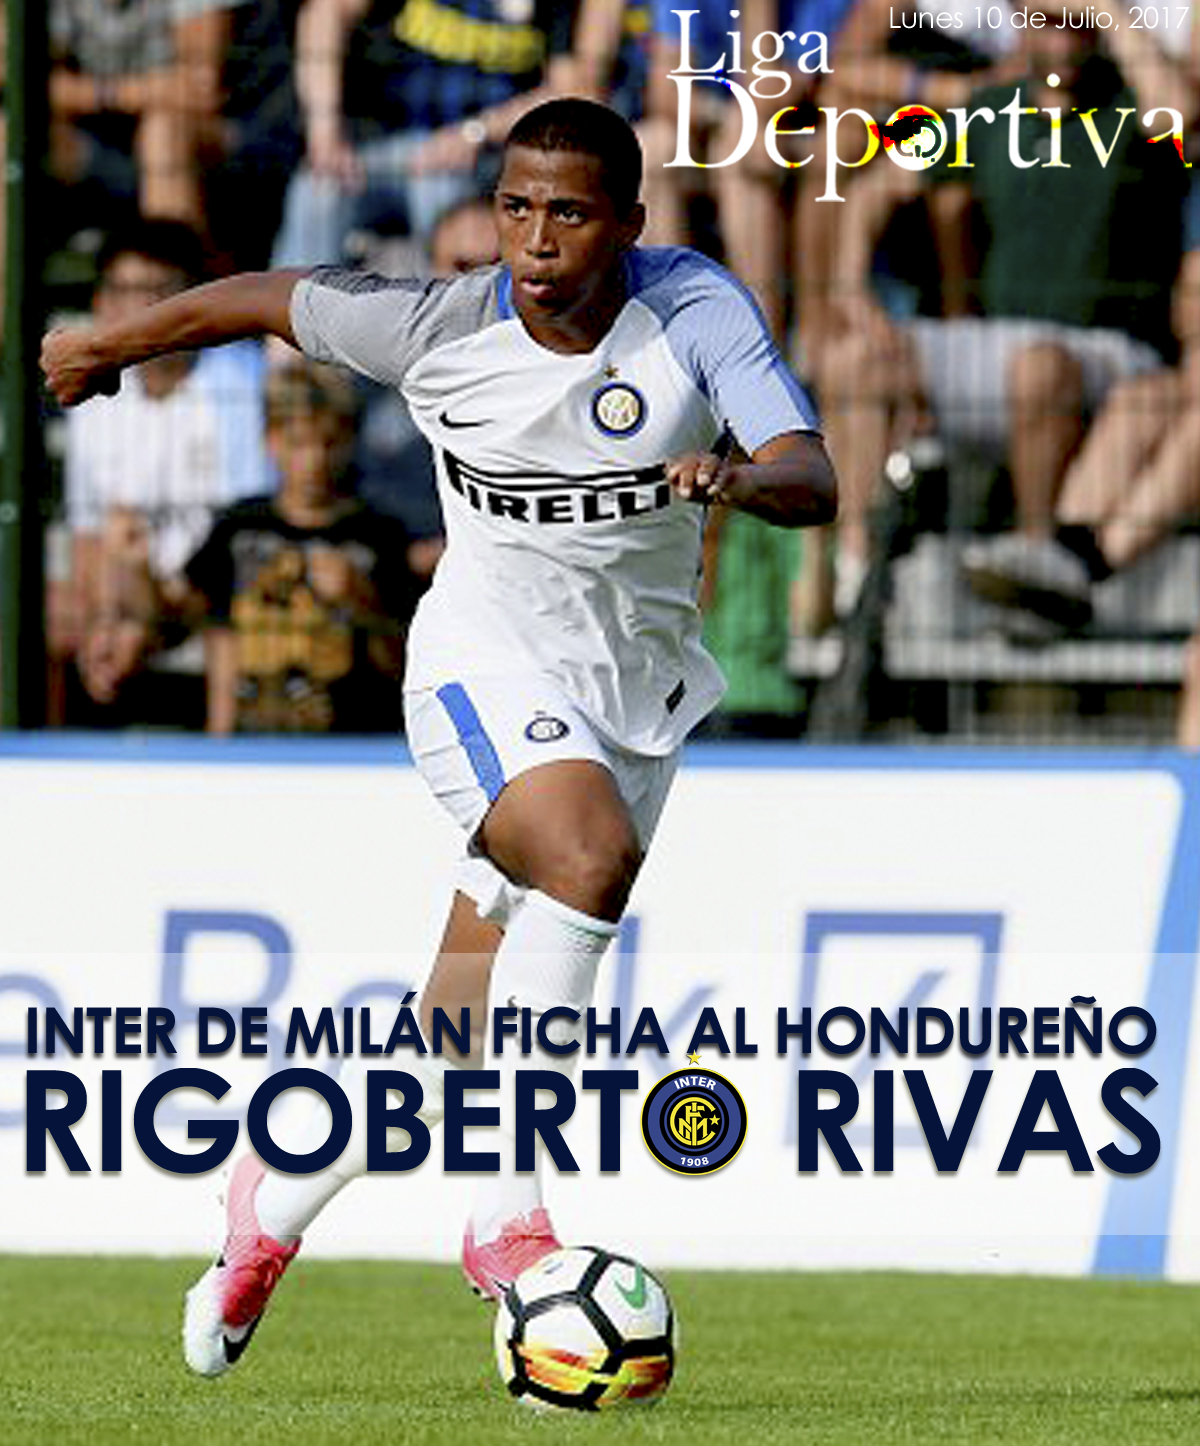 Inter de Milán ficha por cinco años al hondureño Rigoberto Rivas 